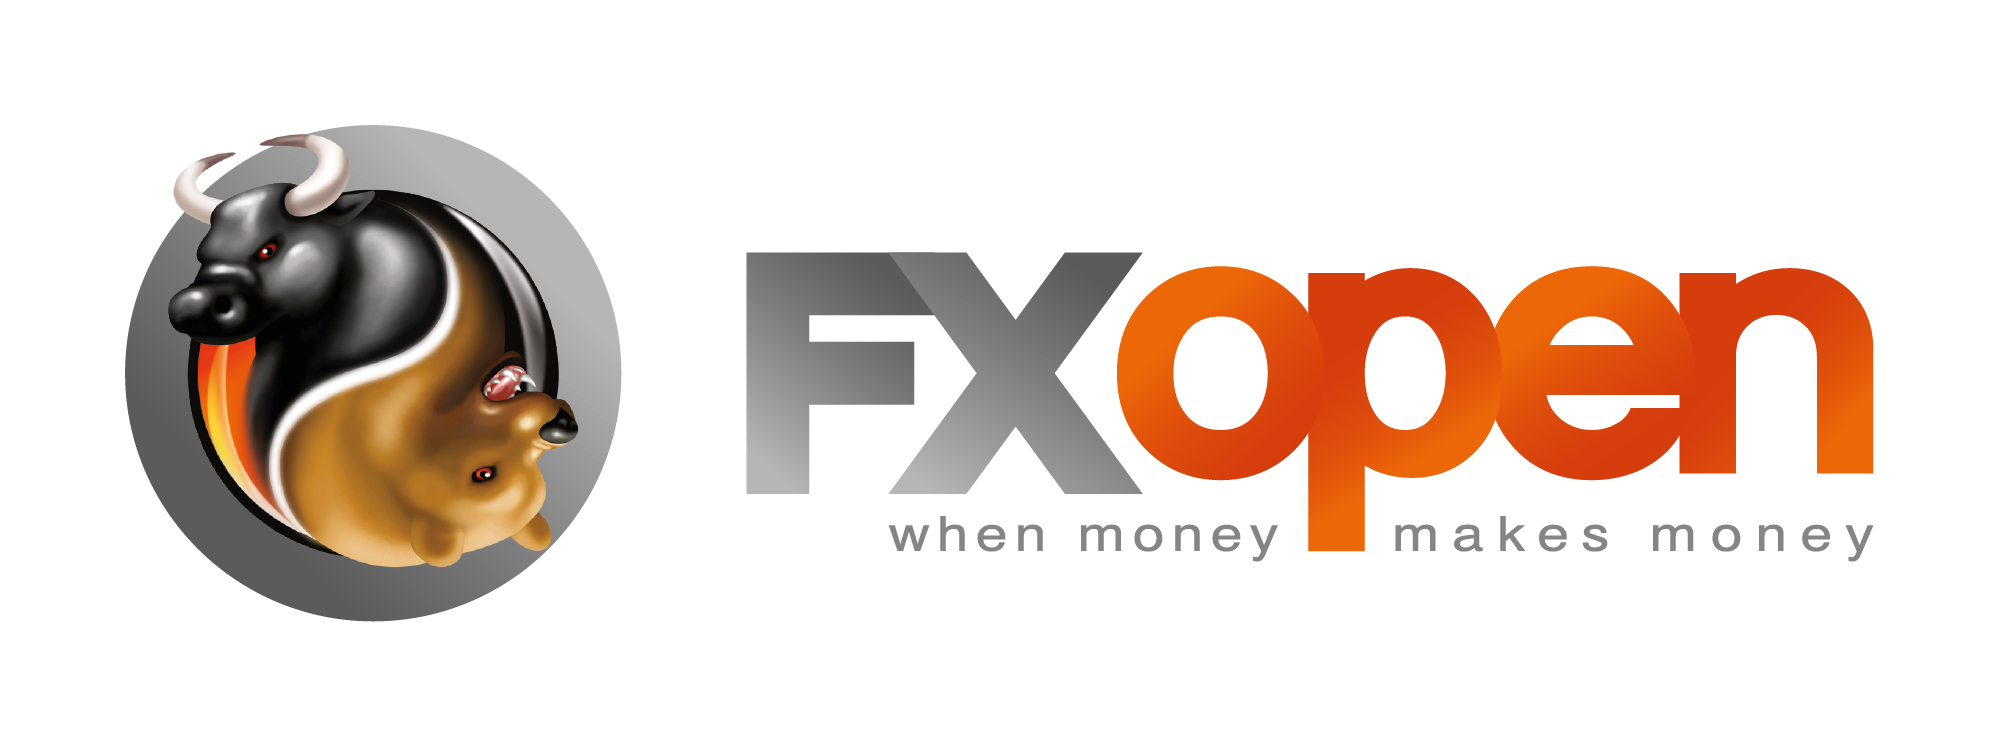 fxopen-logo